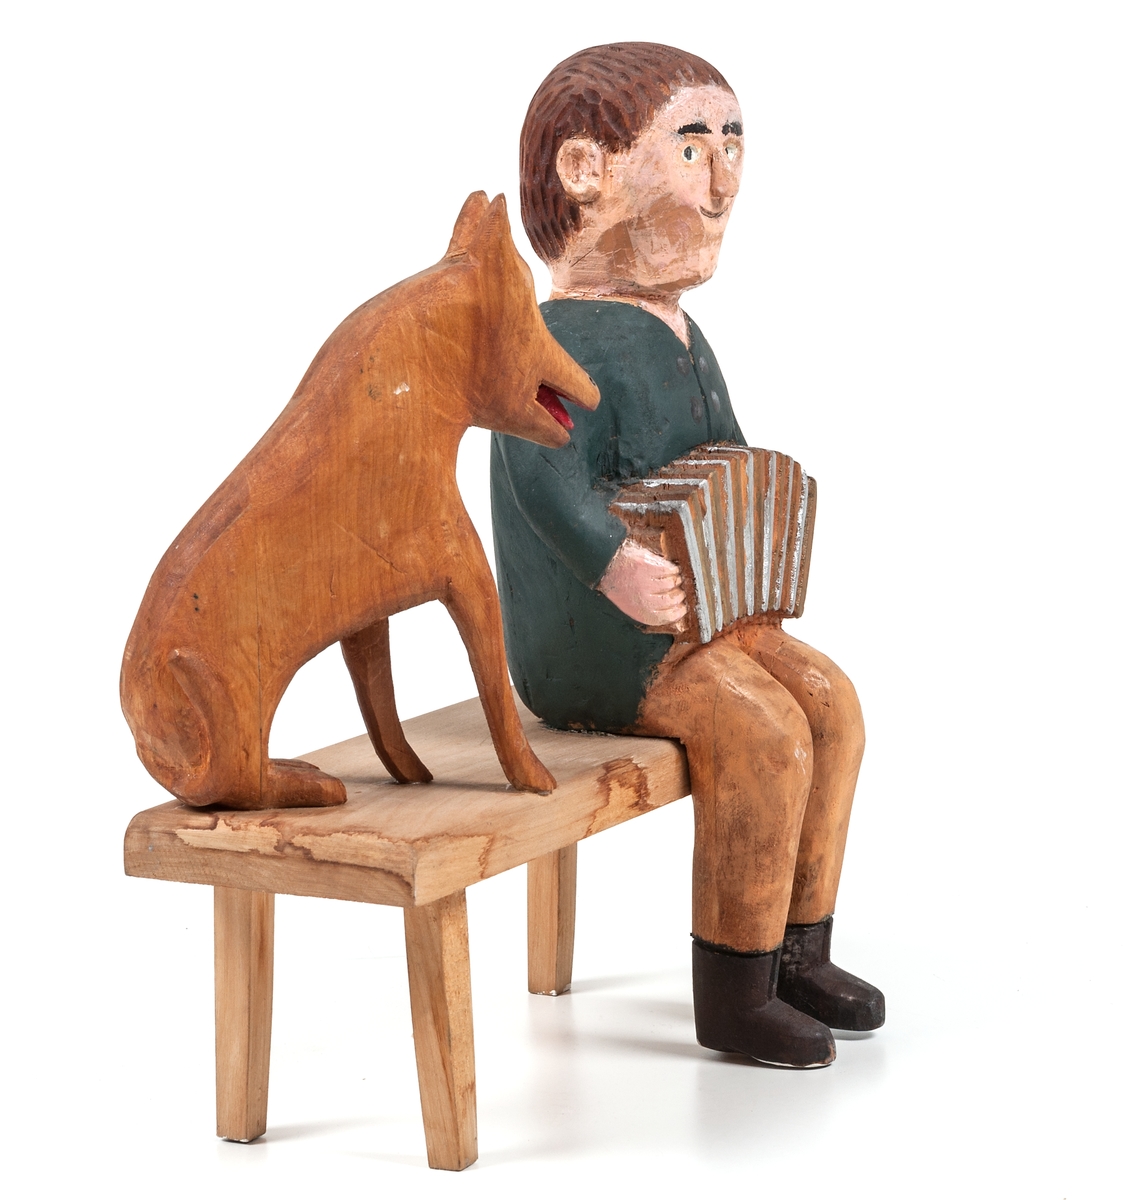 Träskulptur "Dragspelare" av Per Mörk. Skulpturen består av sittande dragspelare och sittande hund på träbänk.